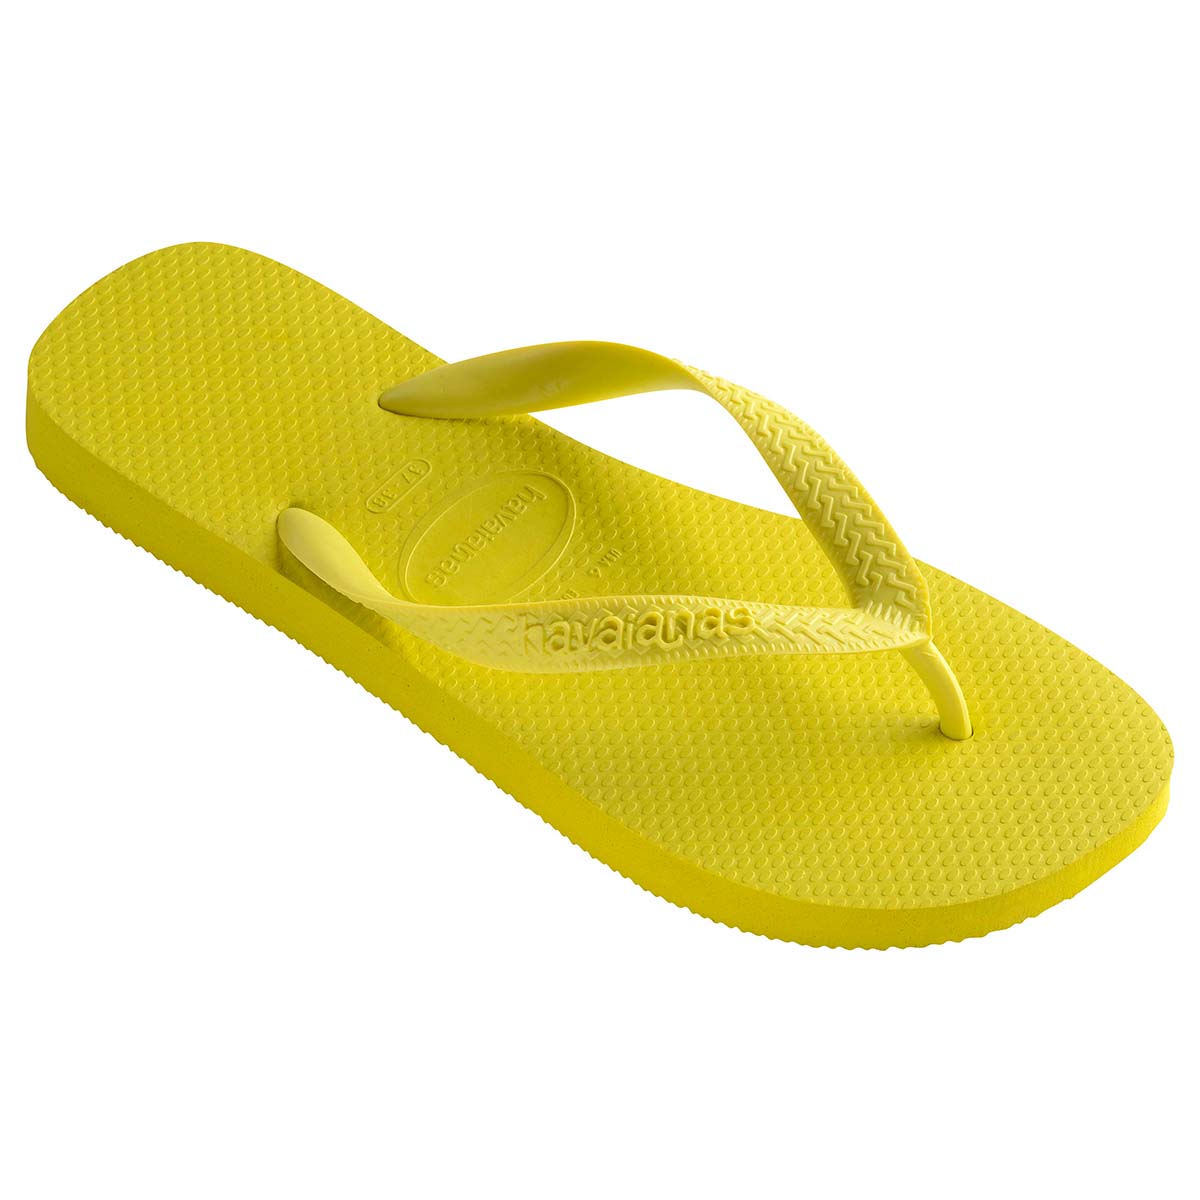 Havaianas Top Unisex Erwachsene Sandalen Zehentrenner Badelatschen 4000029 Gelb 